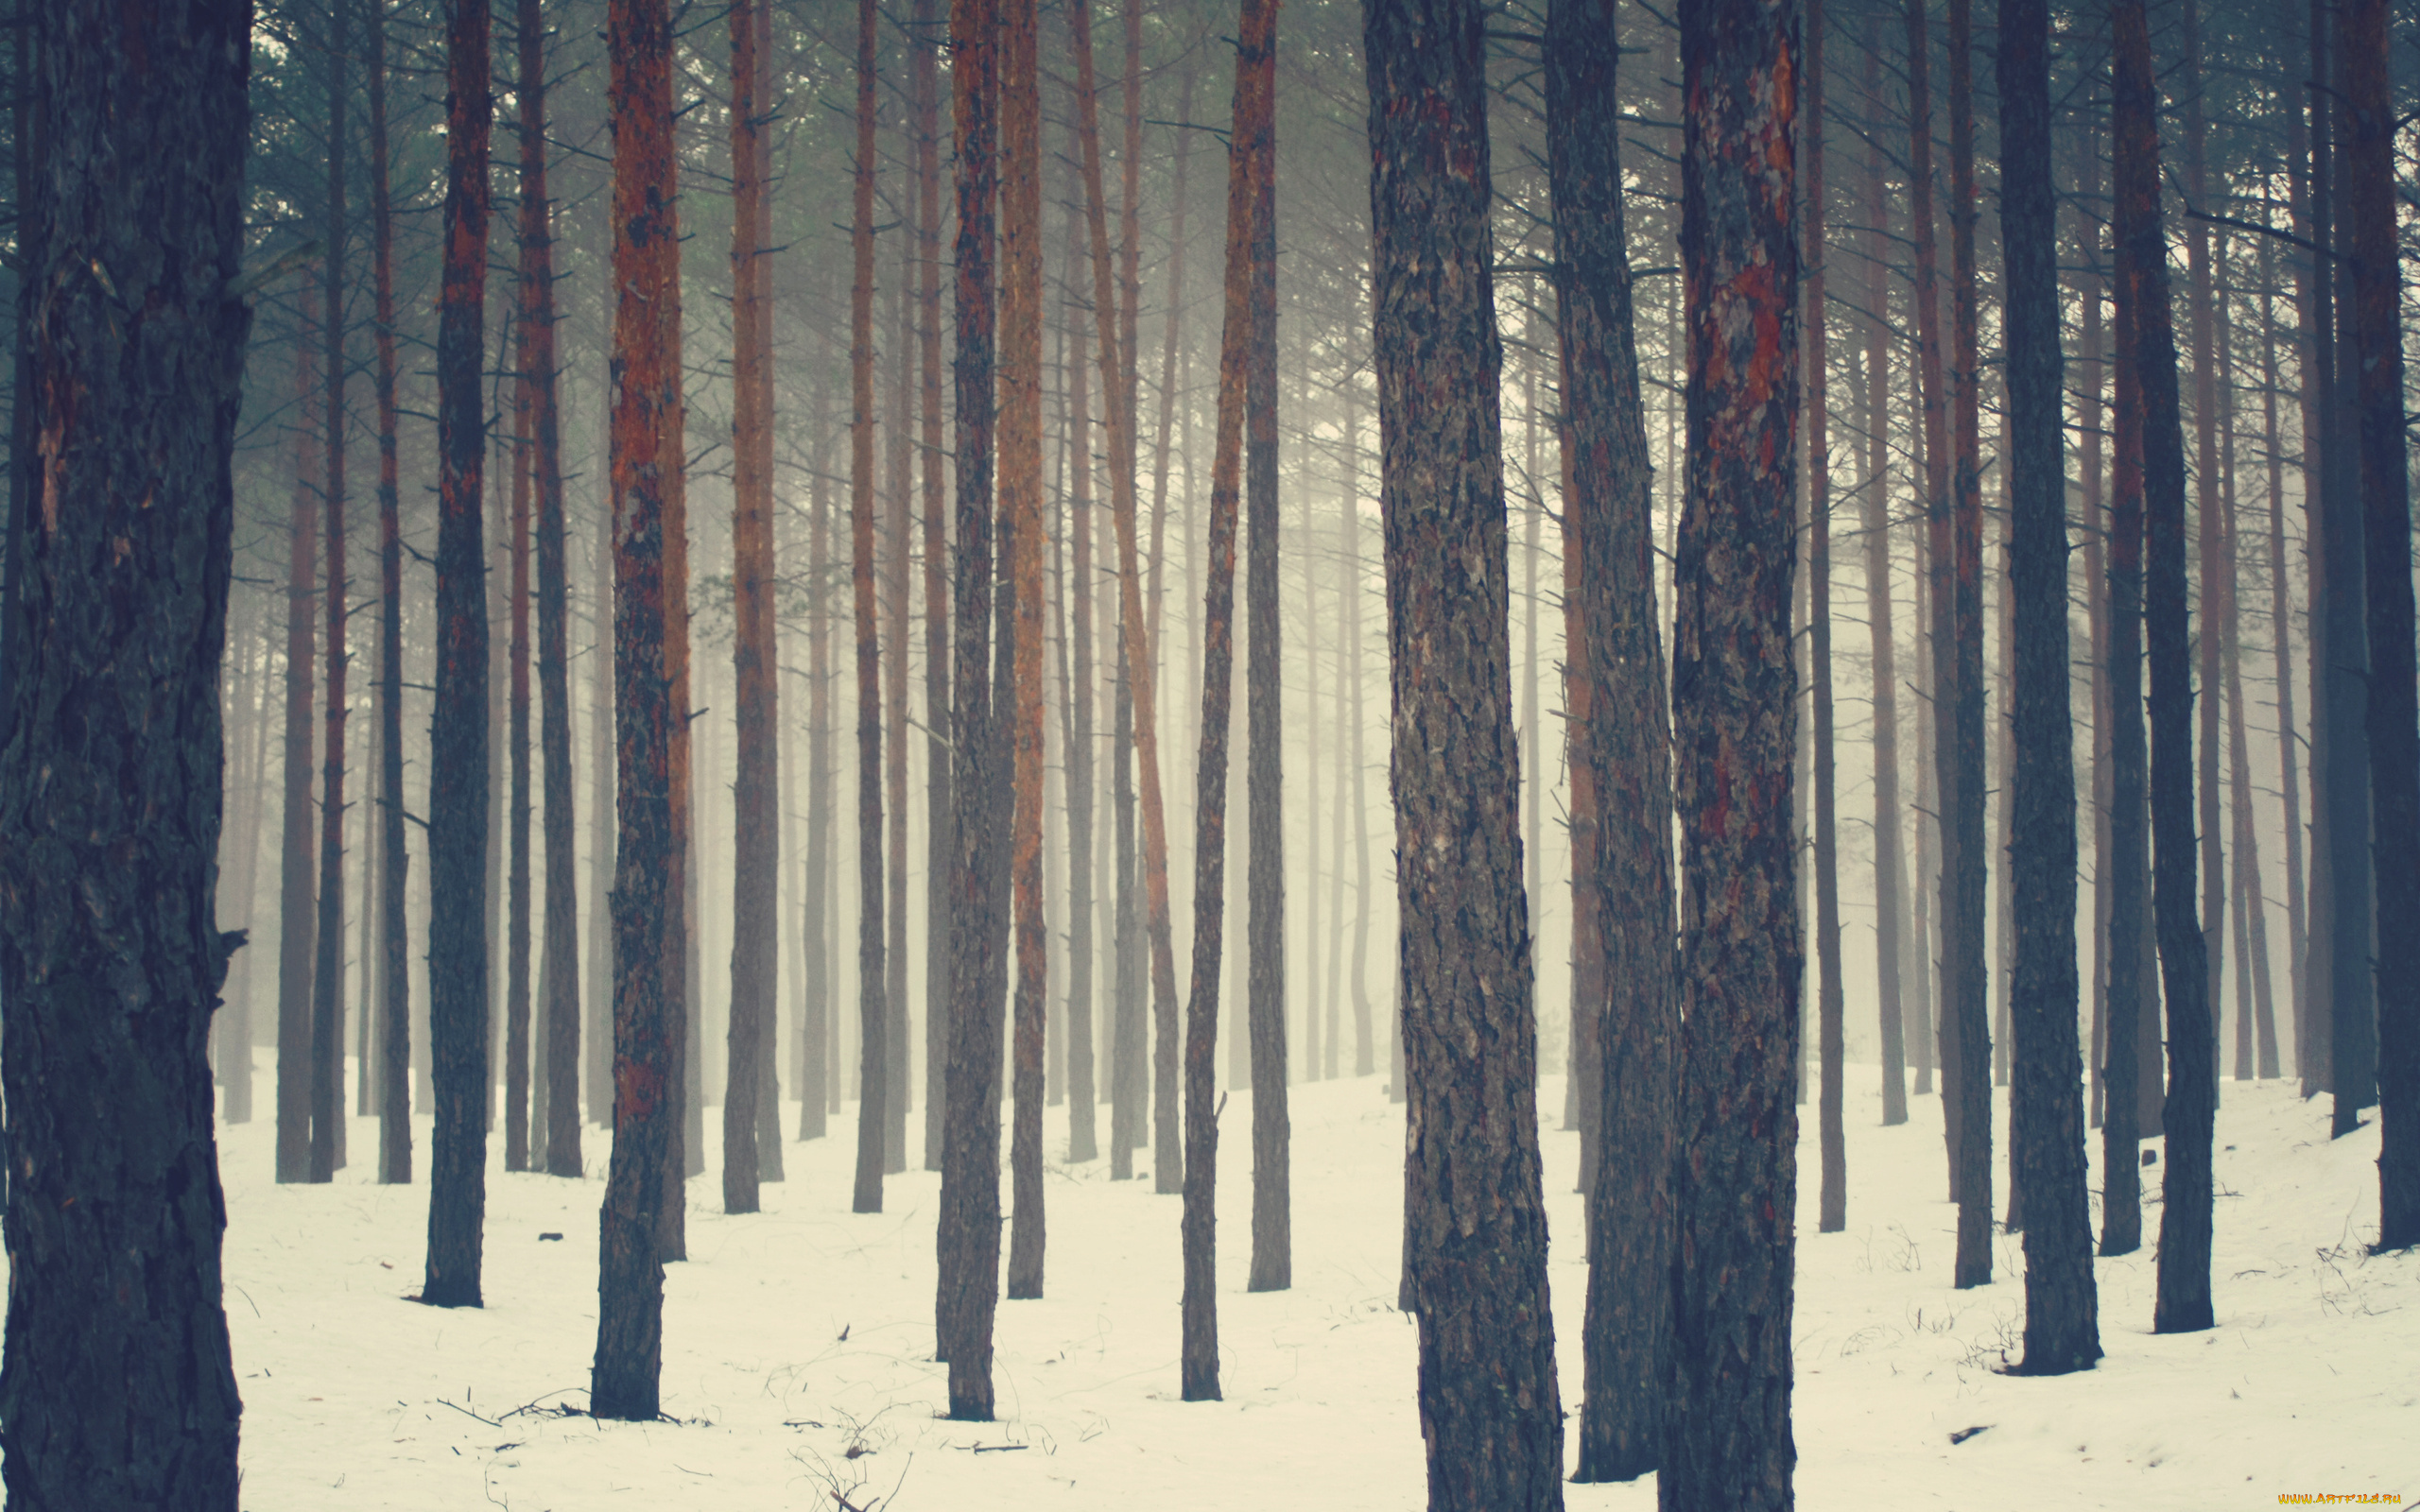 природа, лес, снег, зима